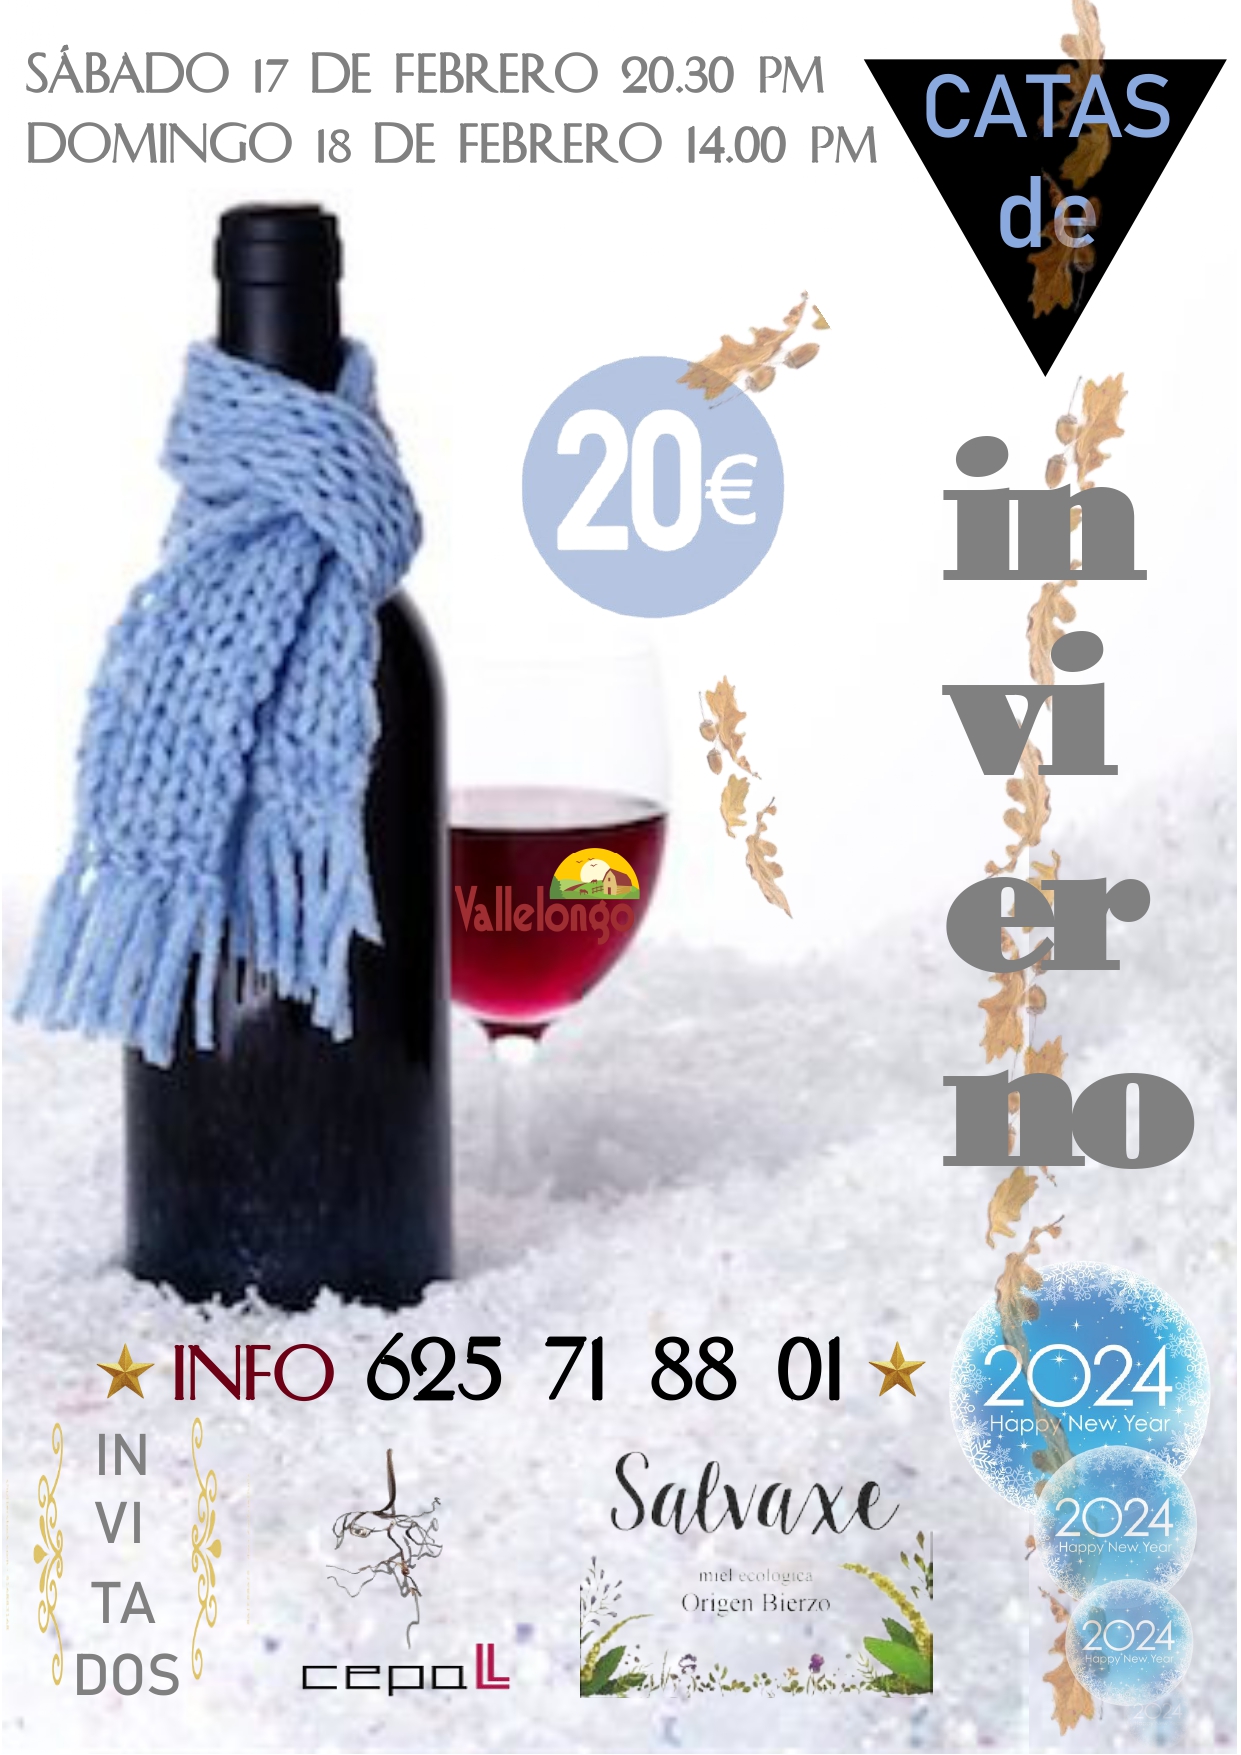 Vallelongo organiza este fin de semana dos catas de invierno con vinos Cepall y Miel Salvaxe 2